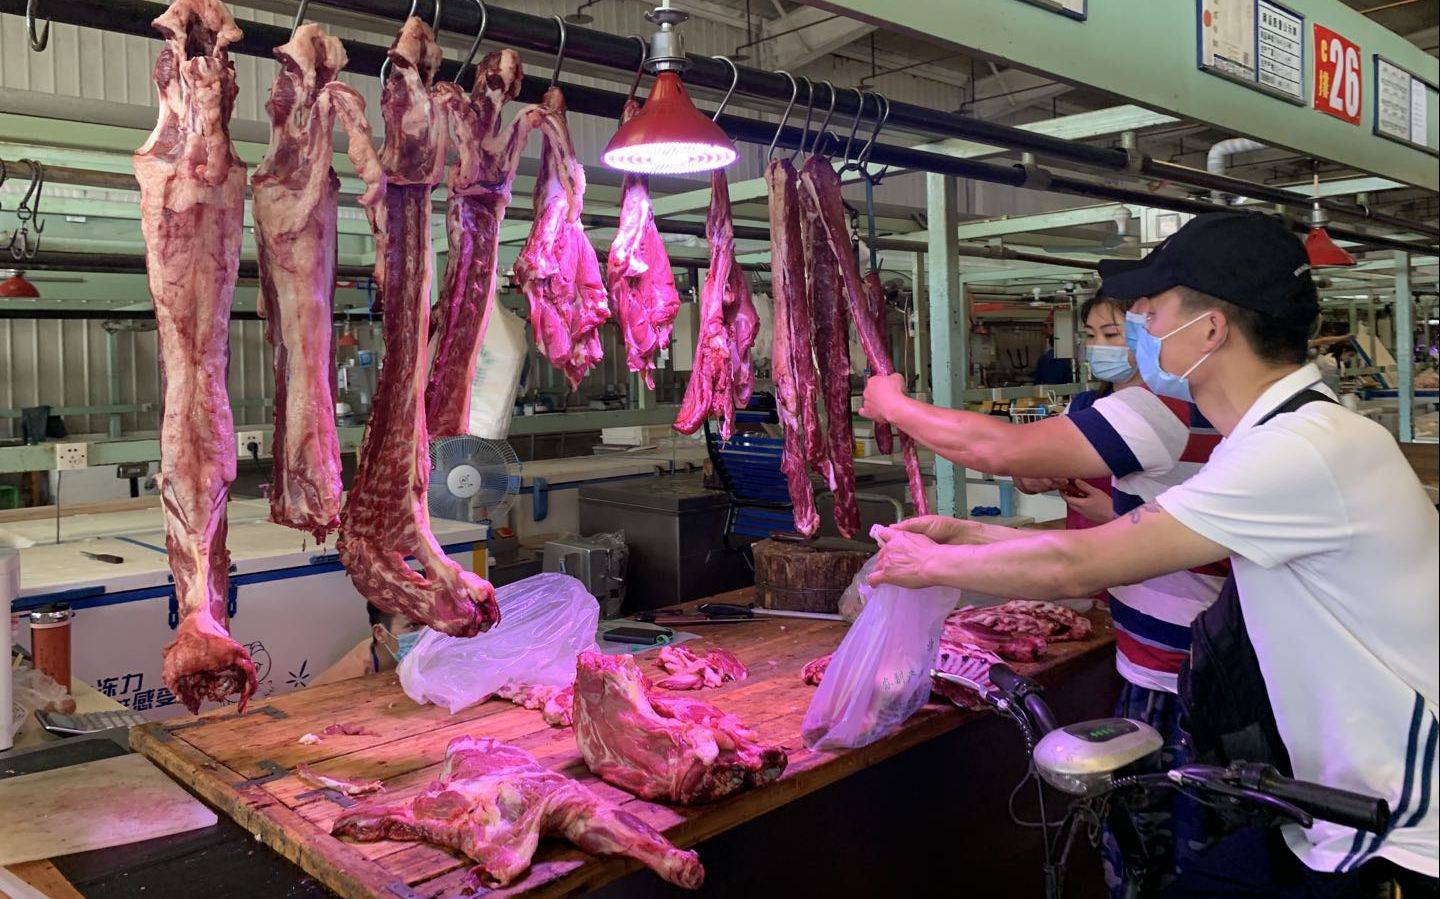 新京报记者 耿子叶 摄记者在走访中发现,大洋路批发市场果品区,牛羊肉